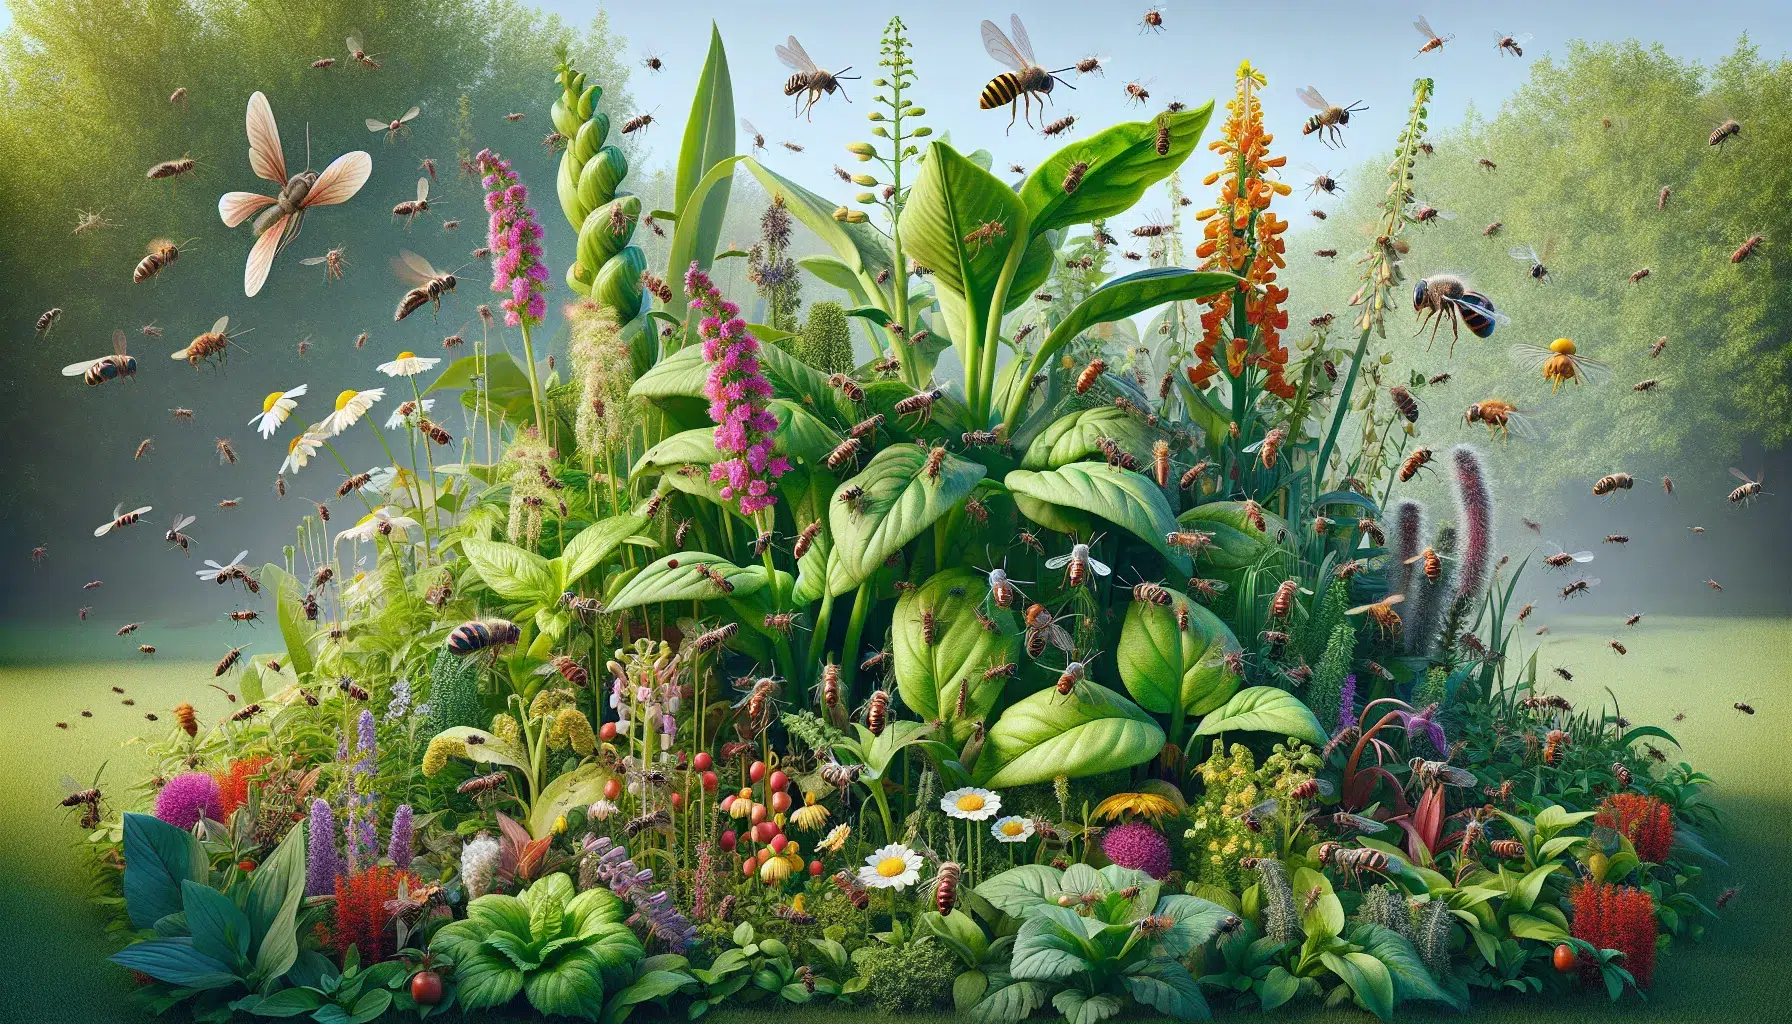 Imagen de diversas plantas de huerto rodeadas de insectos y plagas, destacando la utilidad de las plantas para repeler plagas de forma natural.